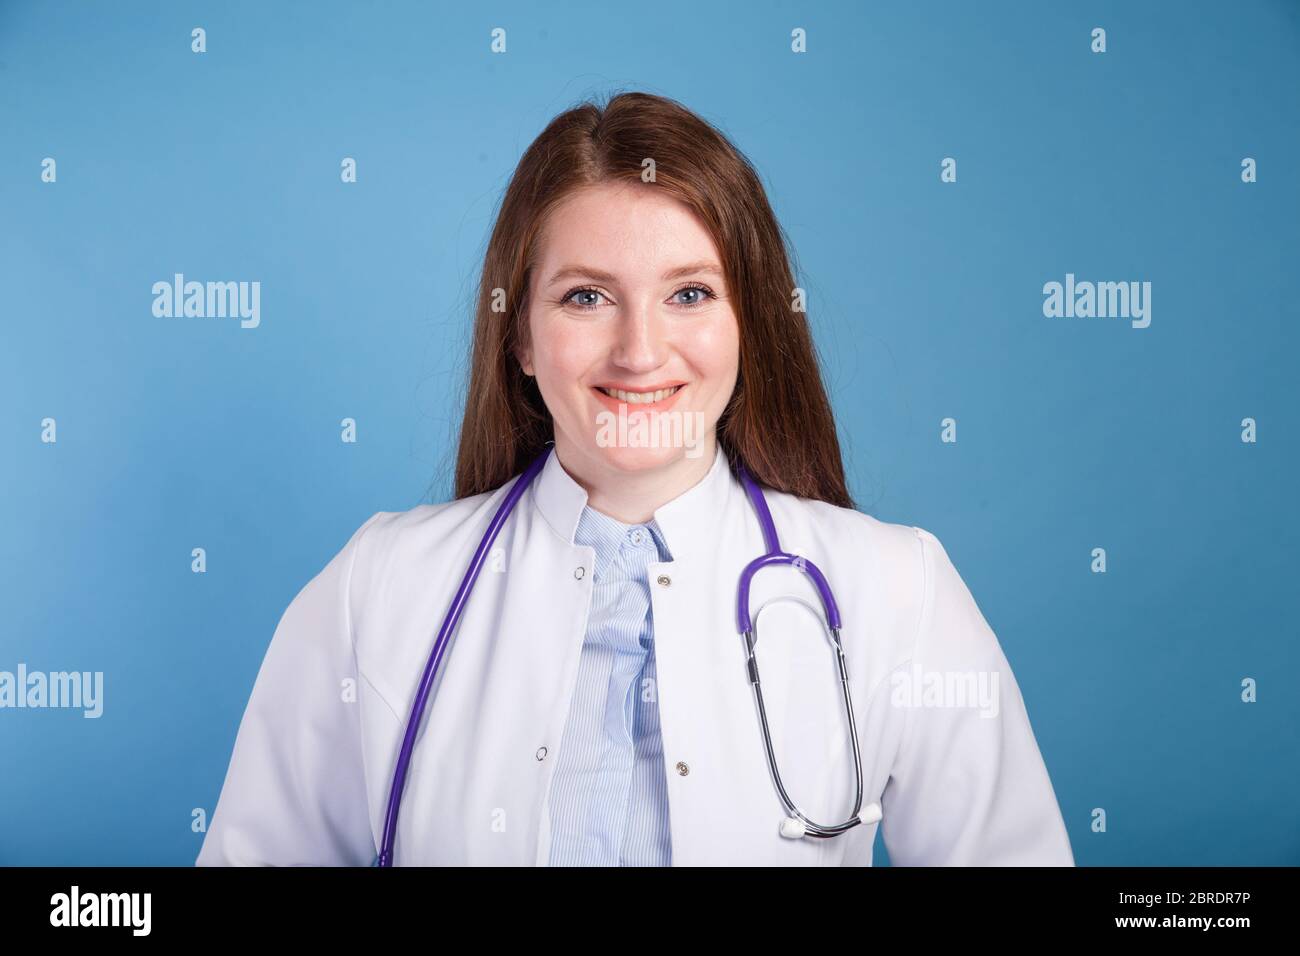 Femme médecin heureux avec le personnel médical de l'hôpital Photo Stock -  Alamy